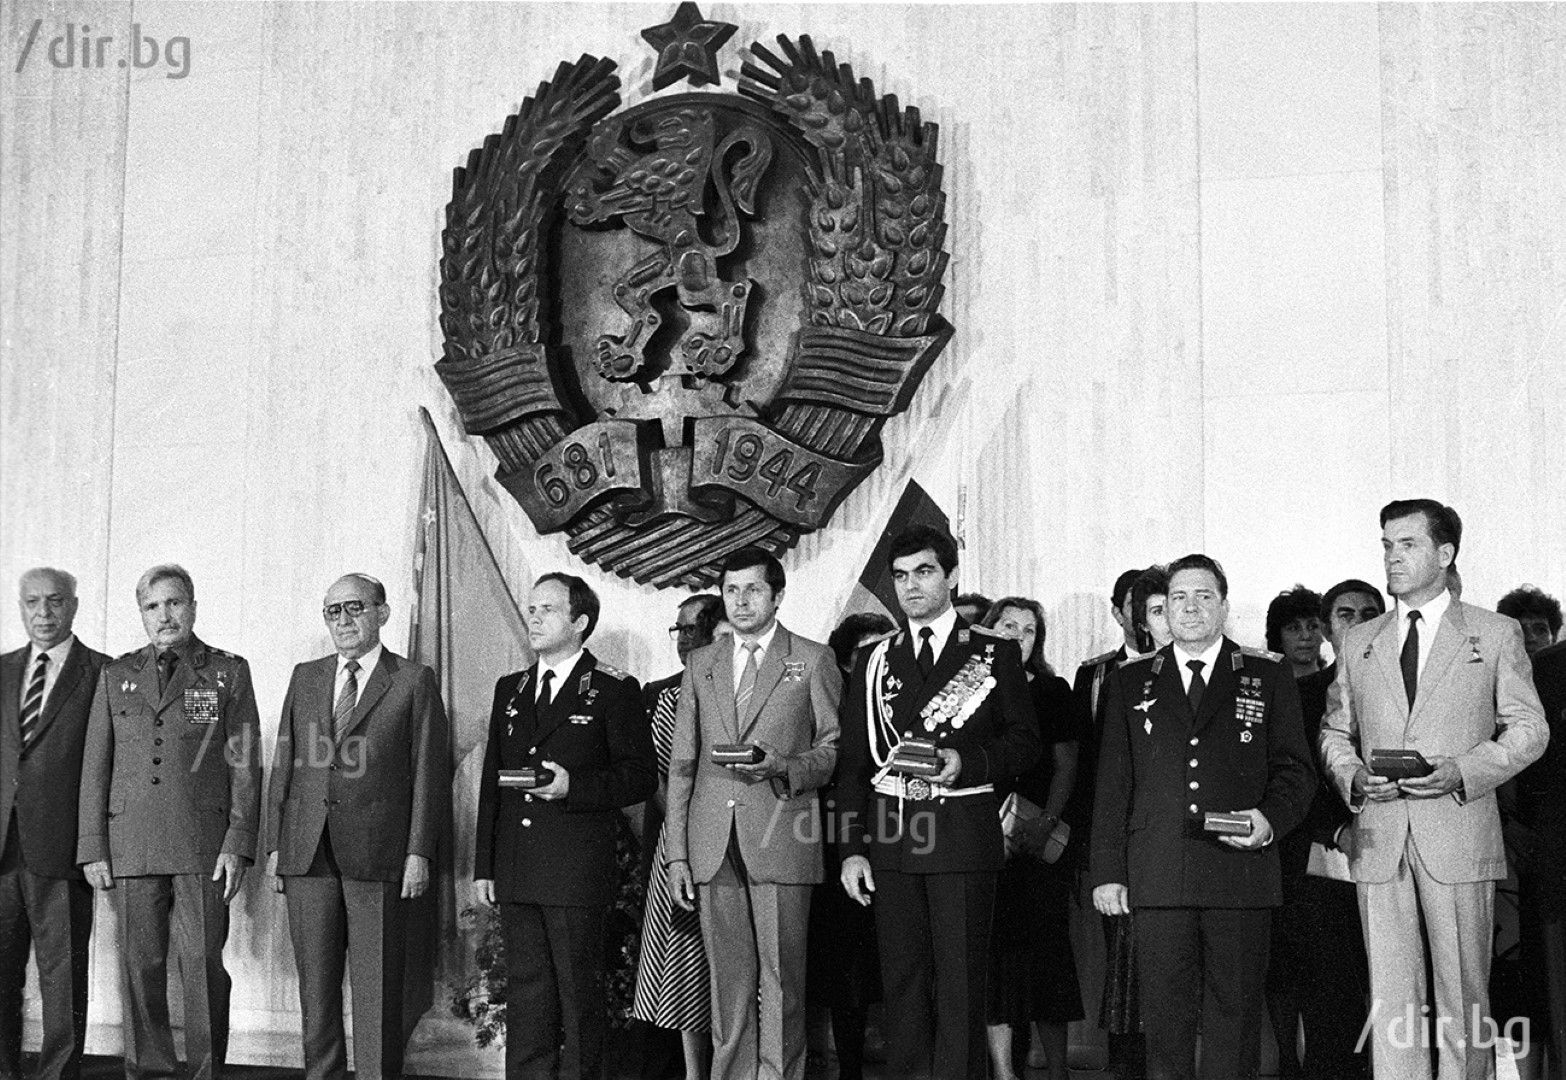 Александър Александров по време на церемонията по награждаването си